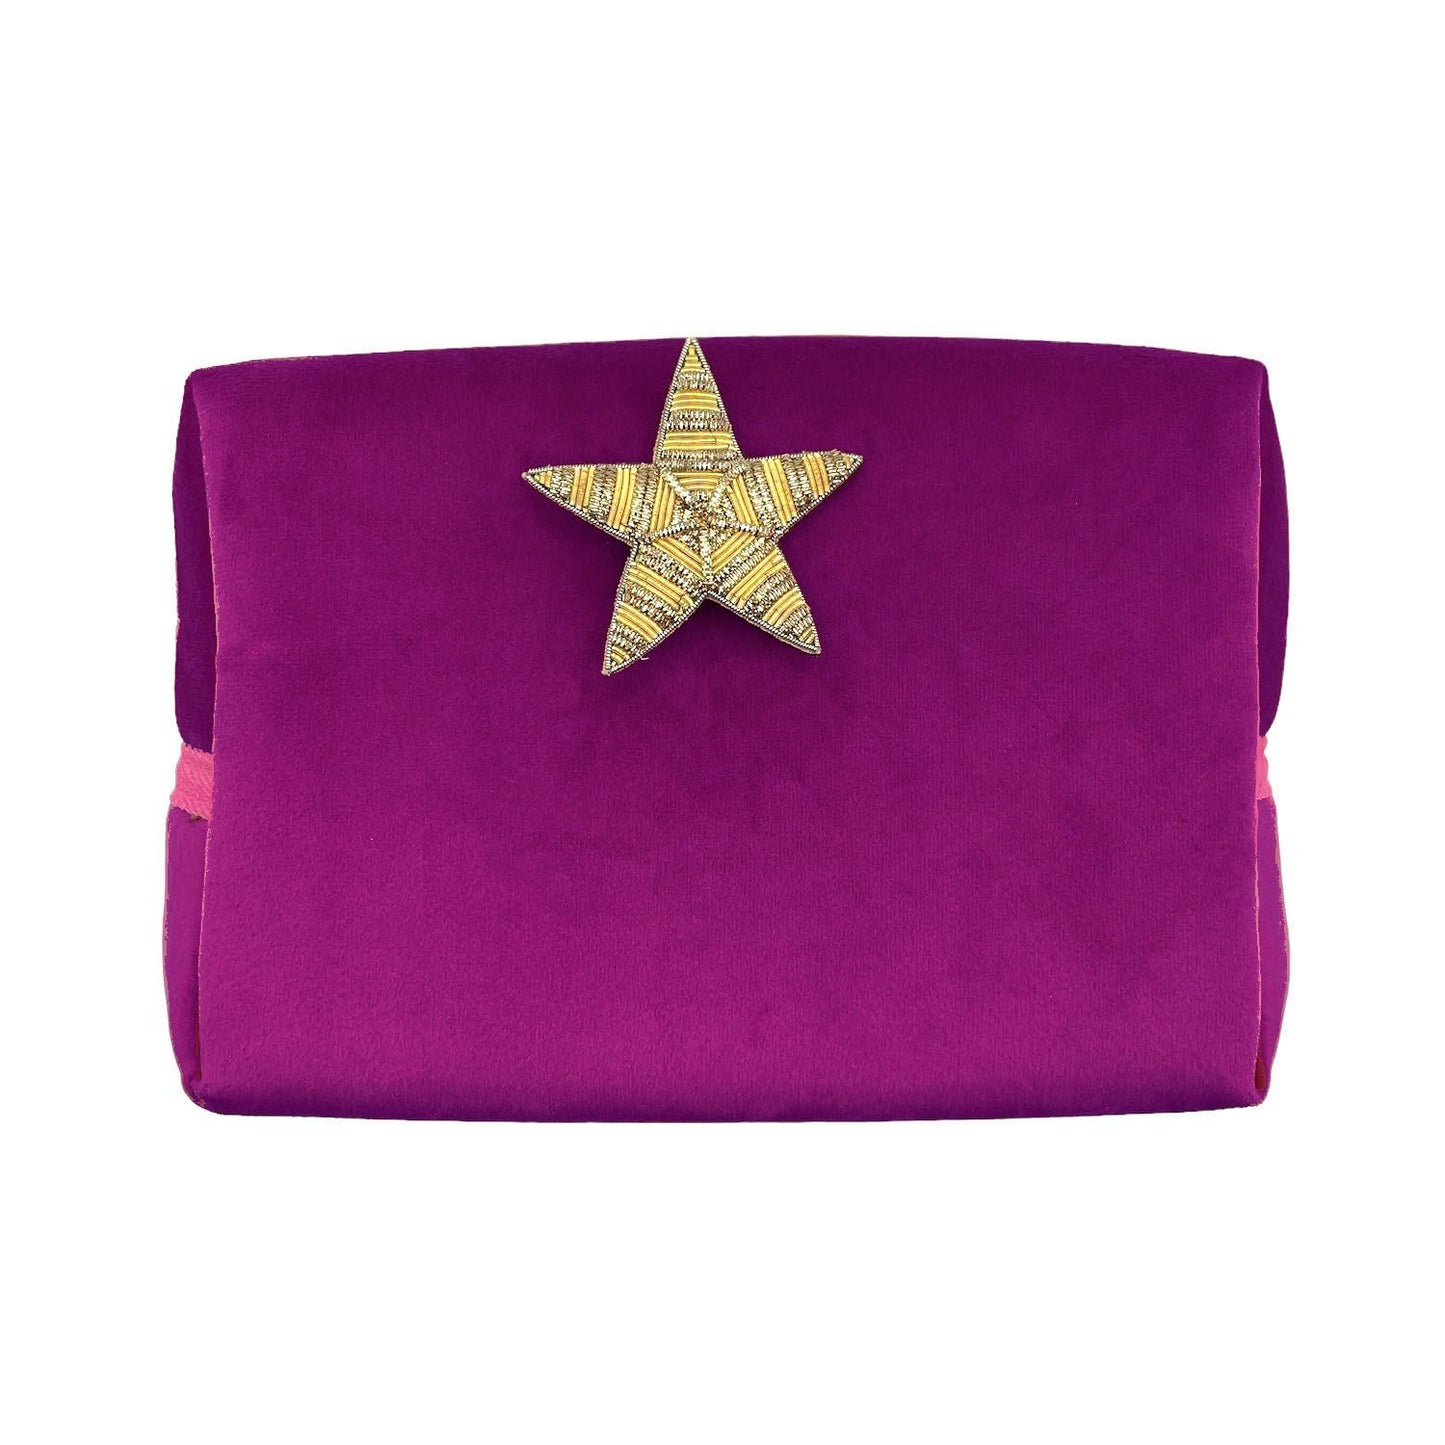 Fuchsia make-up bag & gold star pin - recycled velvet